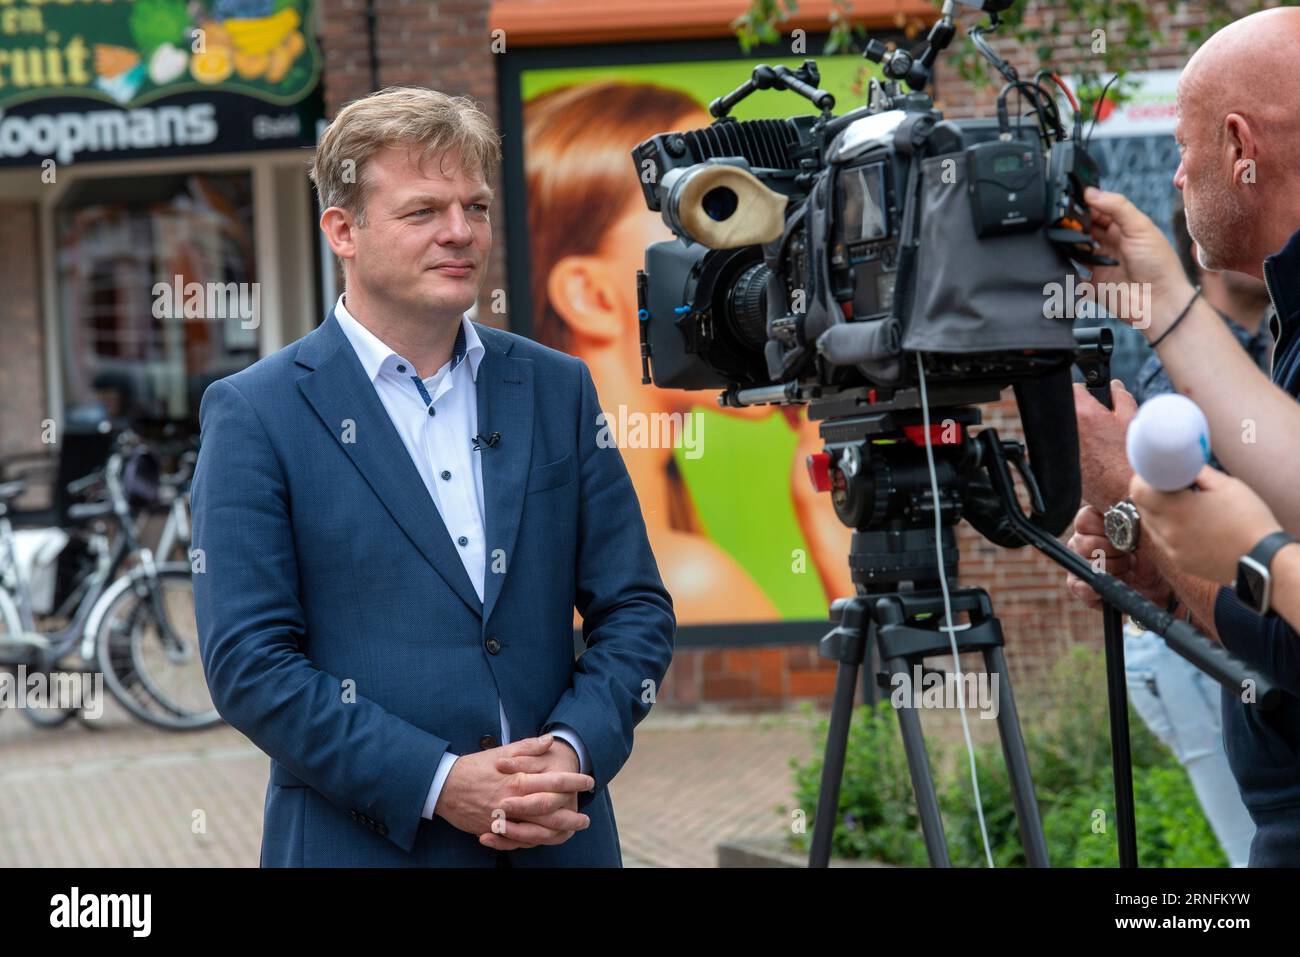 ENSCHEDE, NIEDERLANDE - 05. JUL 2020: Der niederländische Politiker Pieter Omtzigt ist der beliebteste Politiker im Repräsentantenhaus. Stockfoto